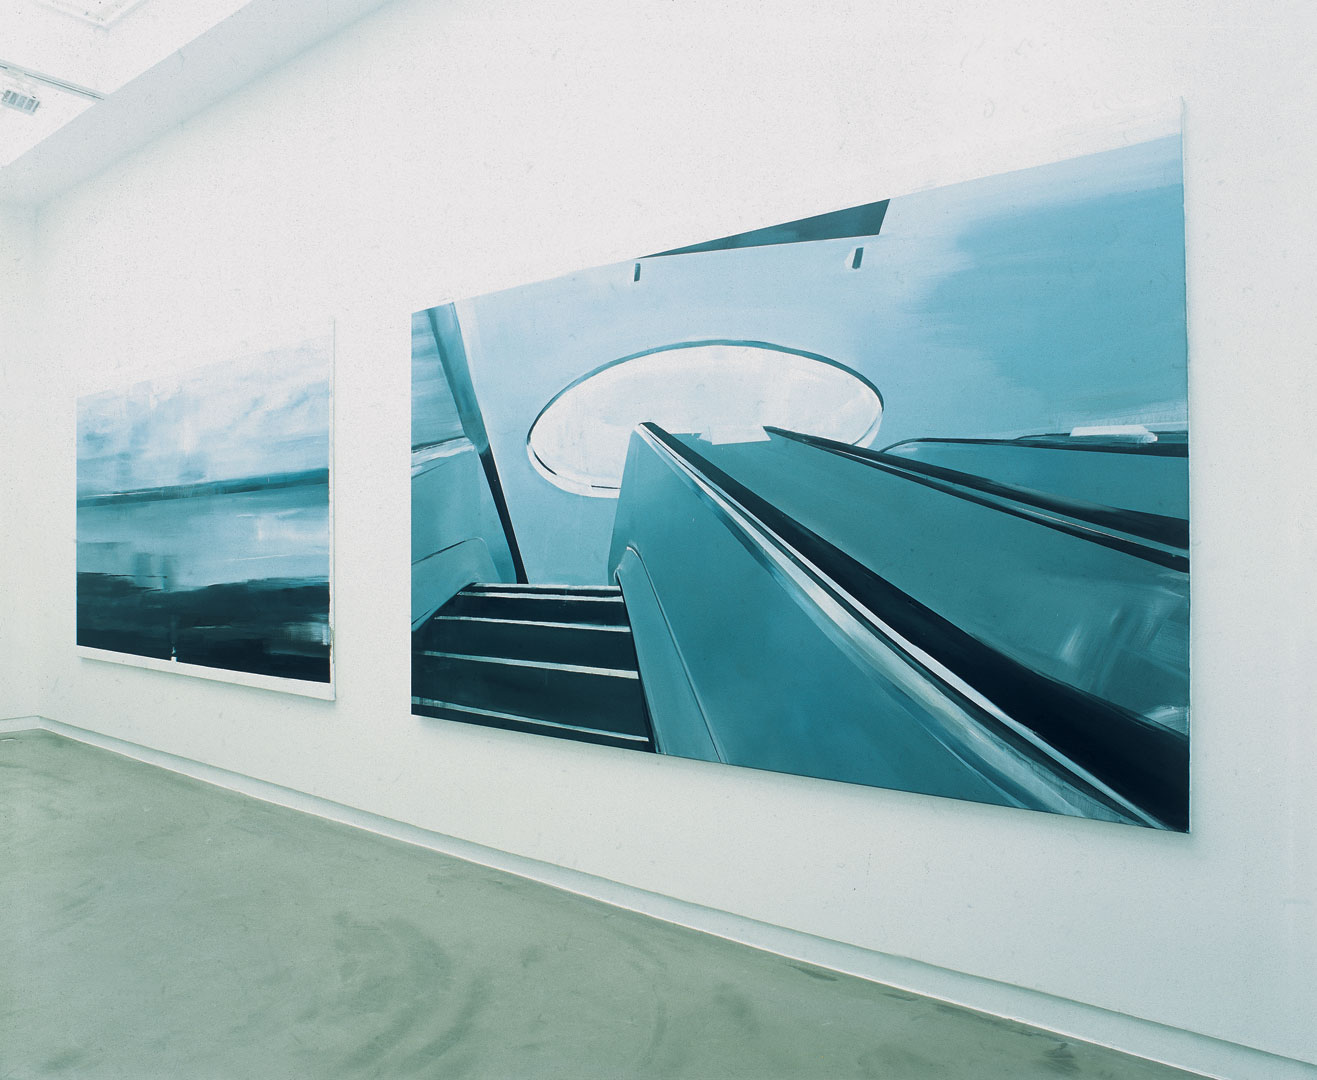 Overzicht- Annet Gelink Galerie 2004